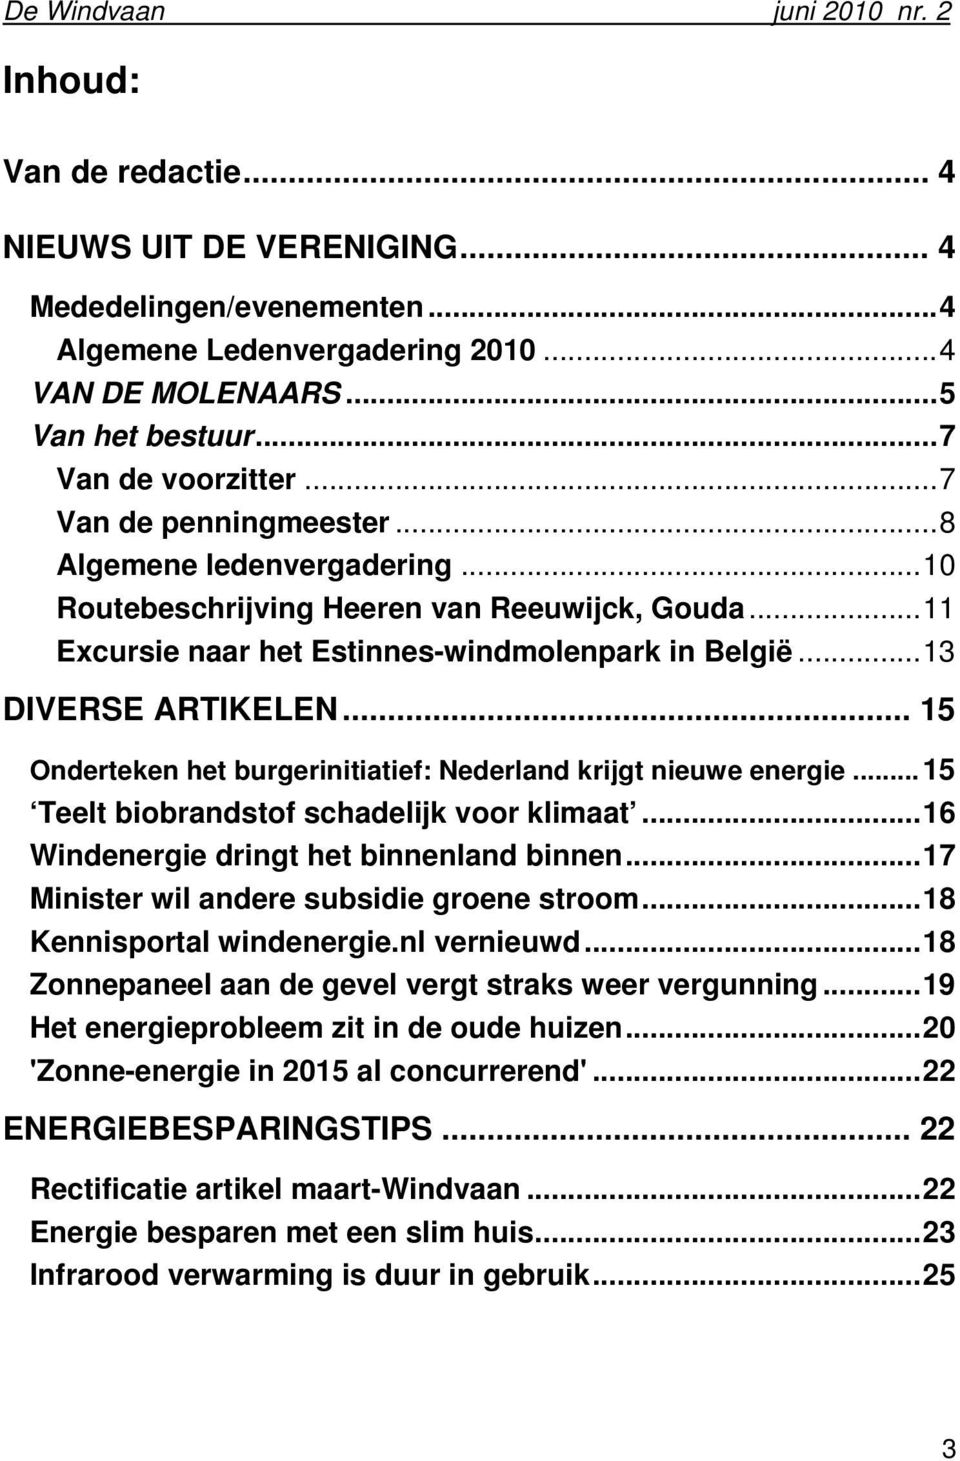 .. 15 Onderteken het burgerinitiatief: Nederland krijgt nieuwe energie...15 Teelt biobrandstof schadelijk voor klimaat...16 Windenergie dringt het binnenland binnen.